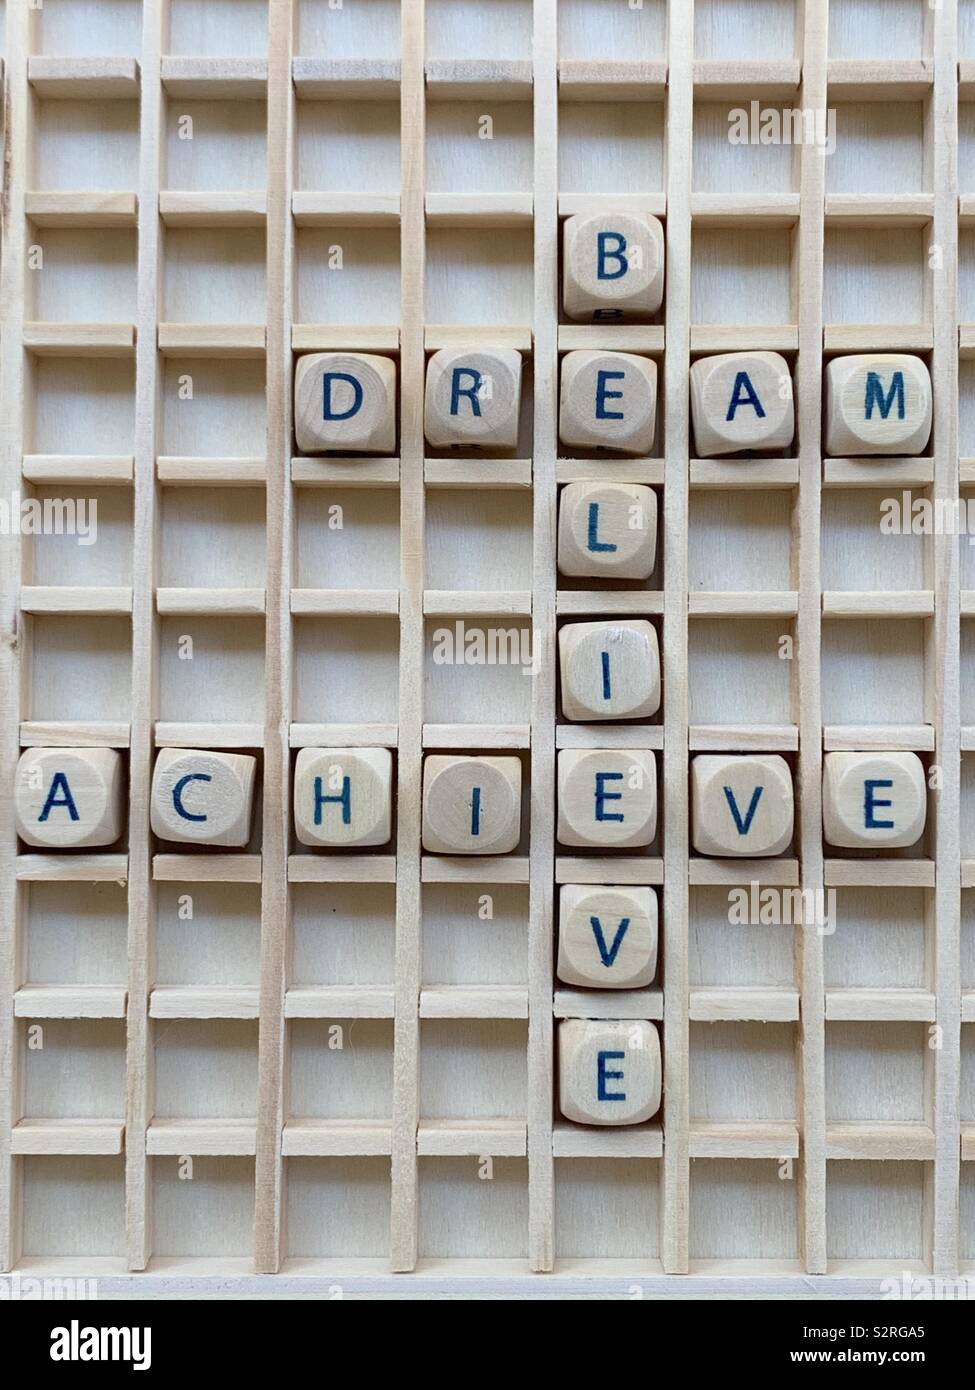 Glaube, Traum, erreichen, Motiv kreuz Worte besteht aus Holz Würfel Würfel Buchstaben Stockfoto